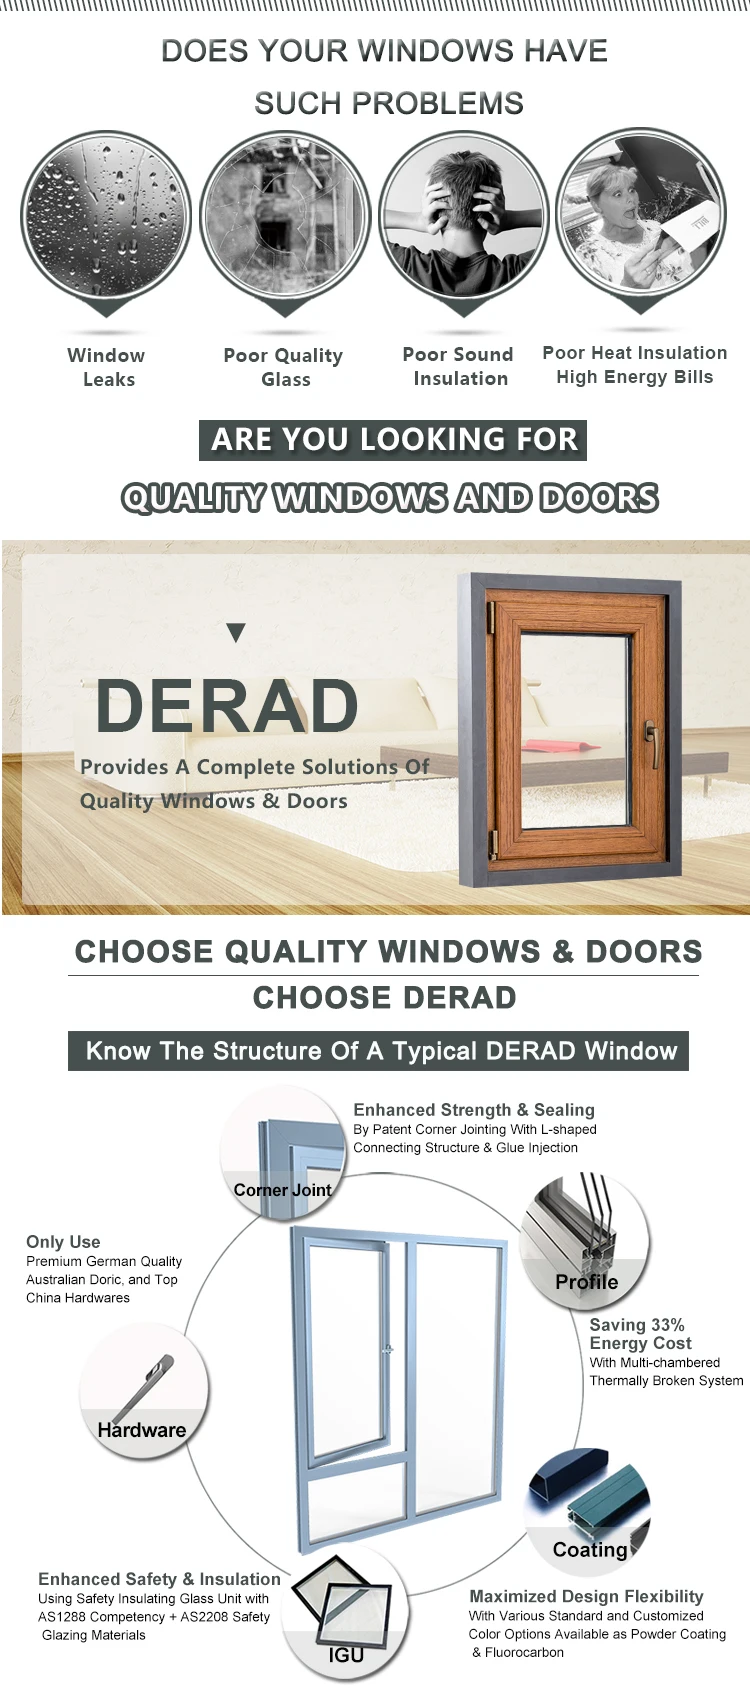 Double Glazing Aluminum Profile Lift and Sliding Door/Thermal Break Double Sliding Door/Window